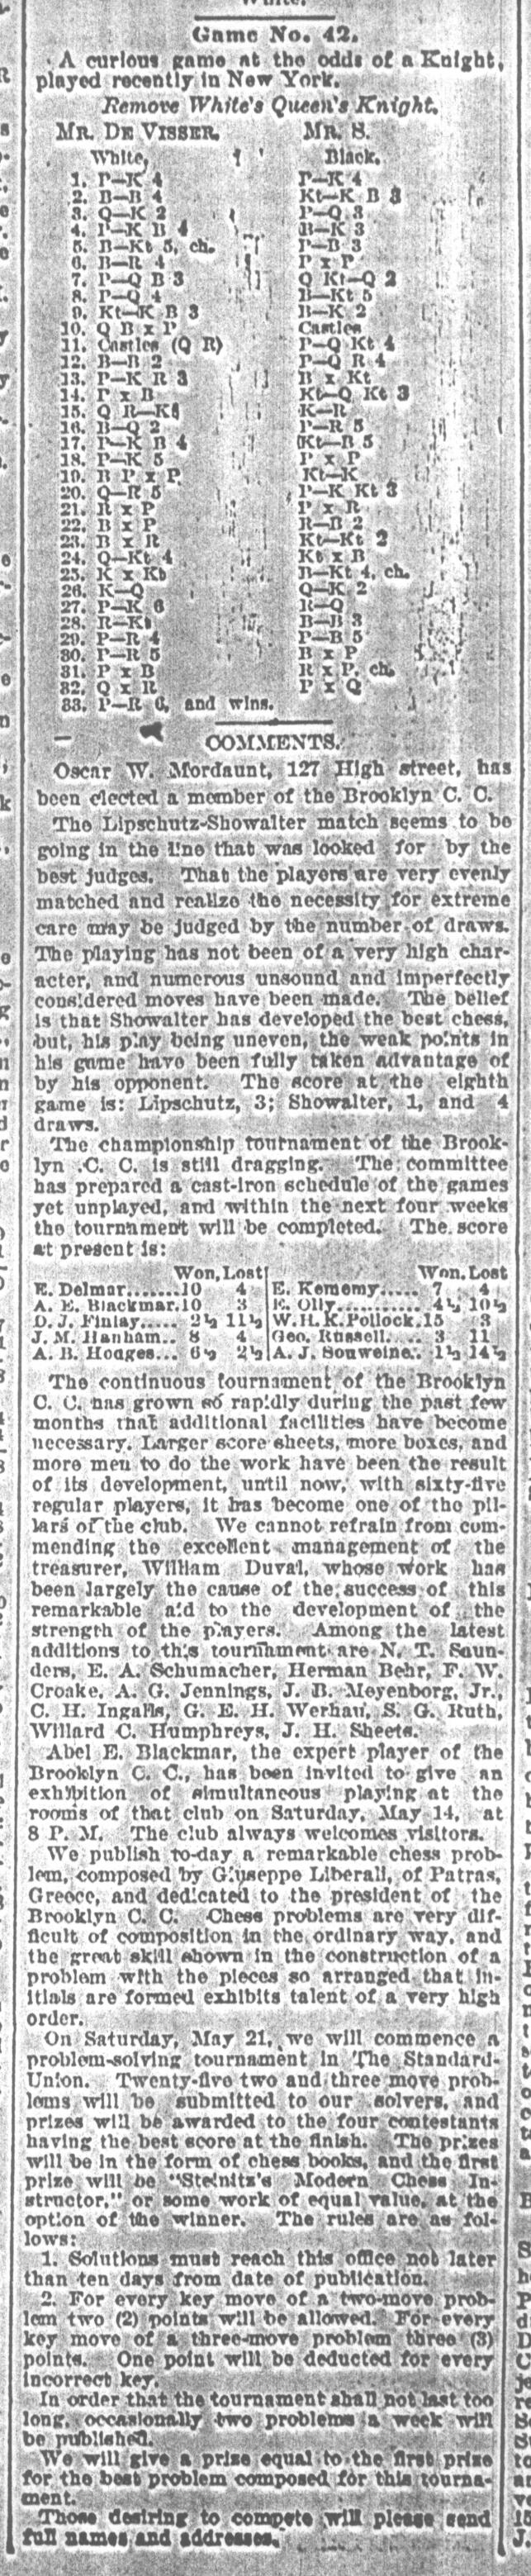 1892.05.07-02 Brooklyn Daily Standard-Union.jpg